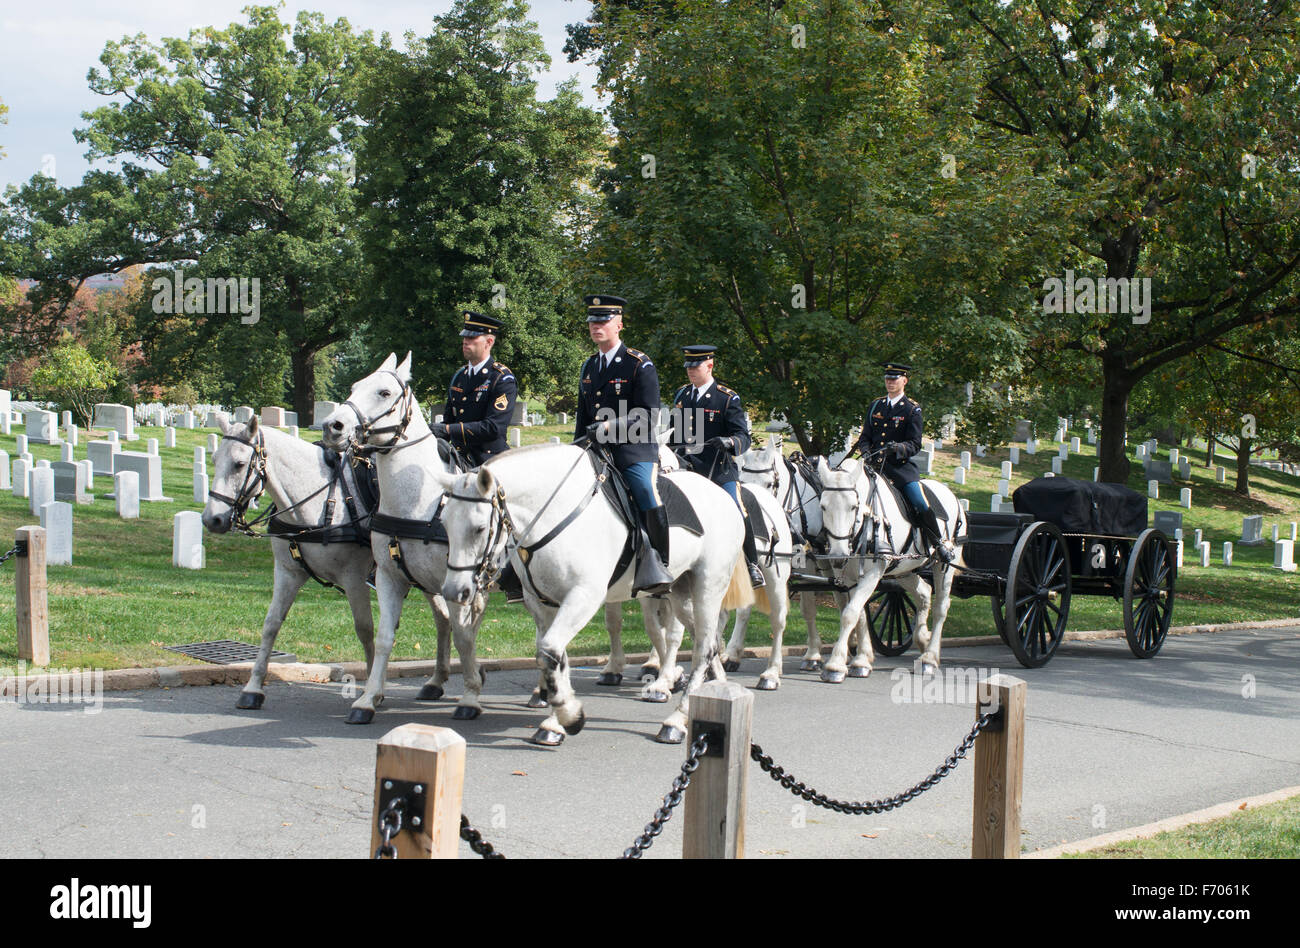 Horse drawn caisson or gun carriage in funeral procession, Arlington National Cemetery, Arlington County, Virginia, USA Stock Photo